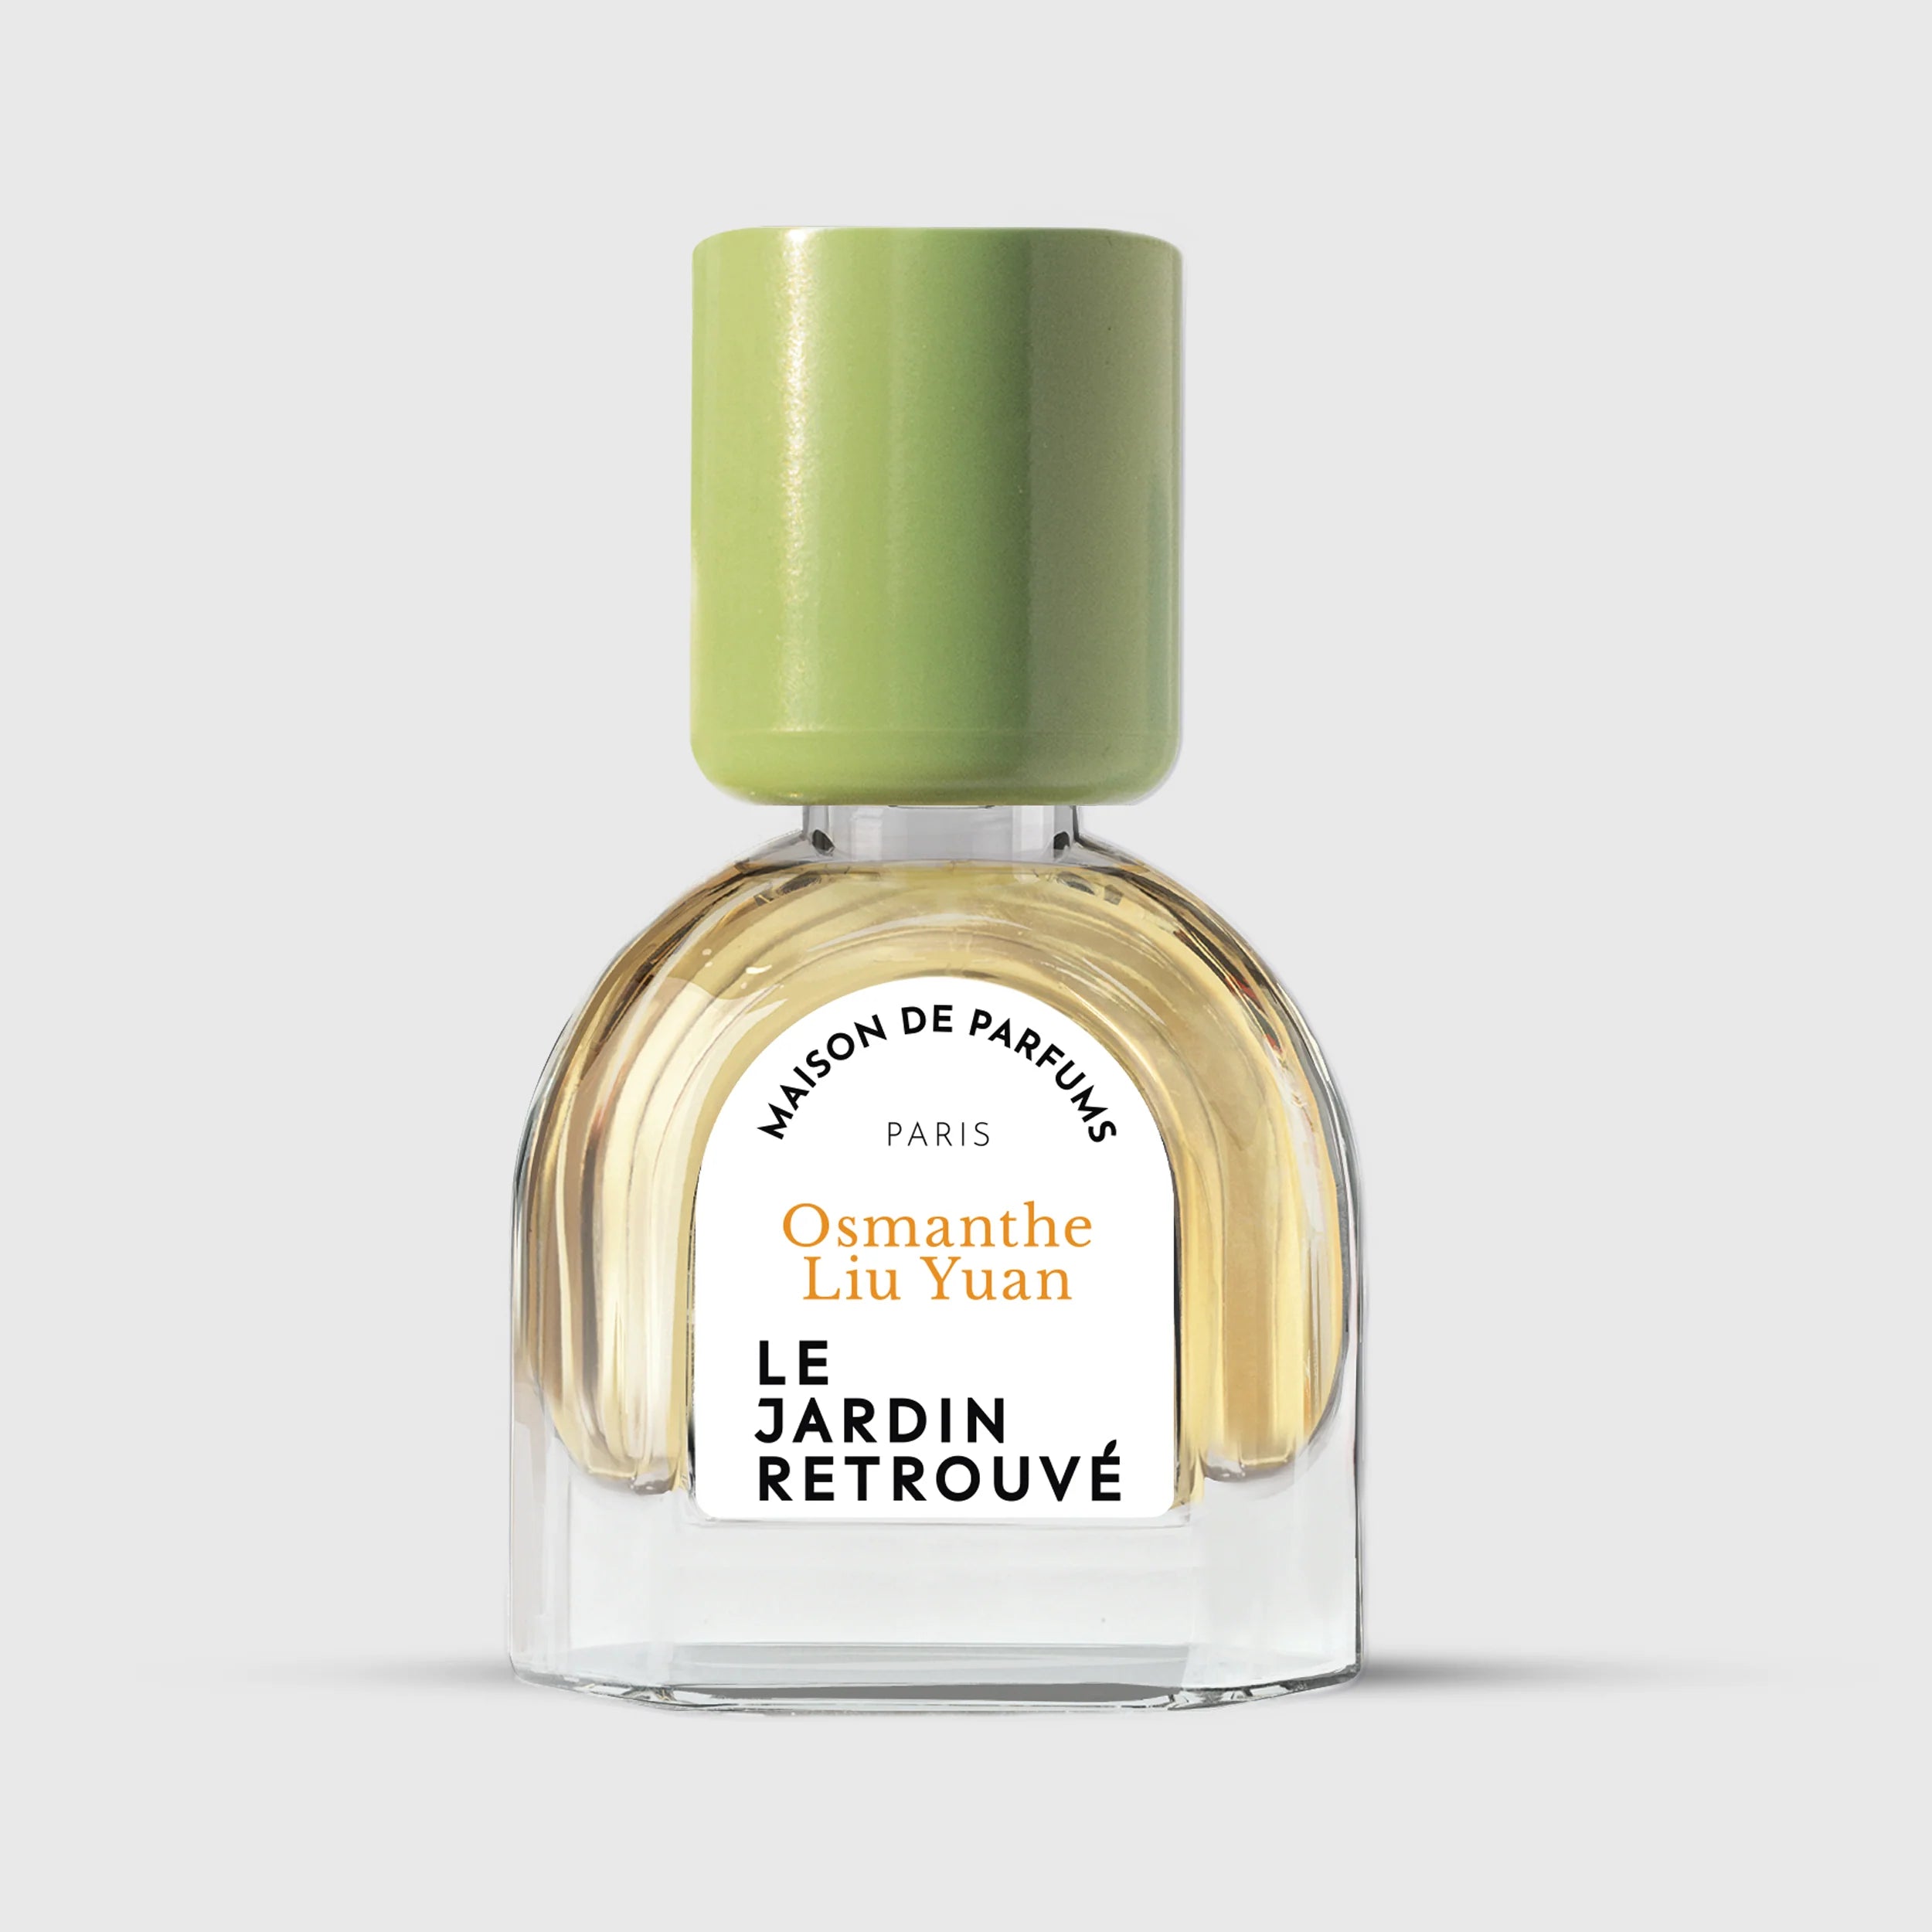 Osmanthe Liu Yuan Eau de Parfum 15ml Bottle by Le Jardin Retrouvé